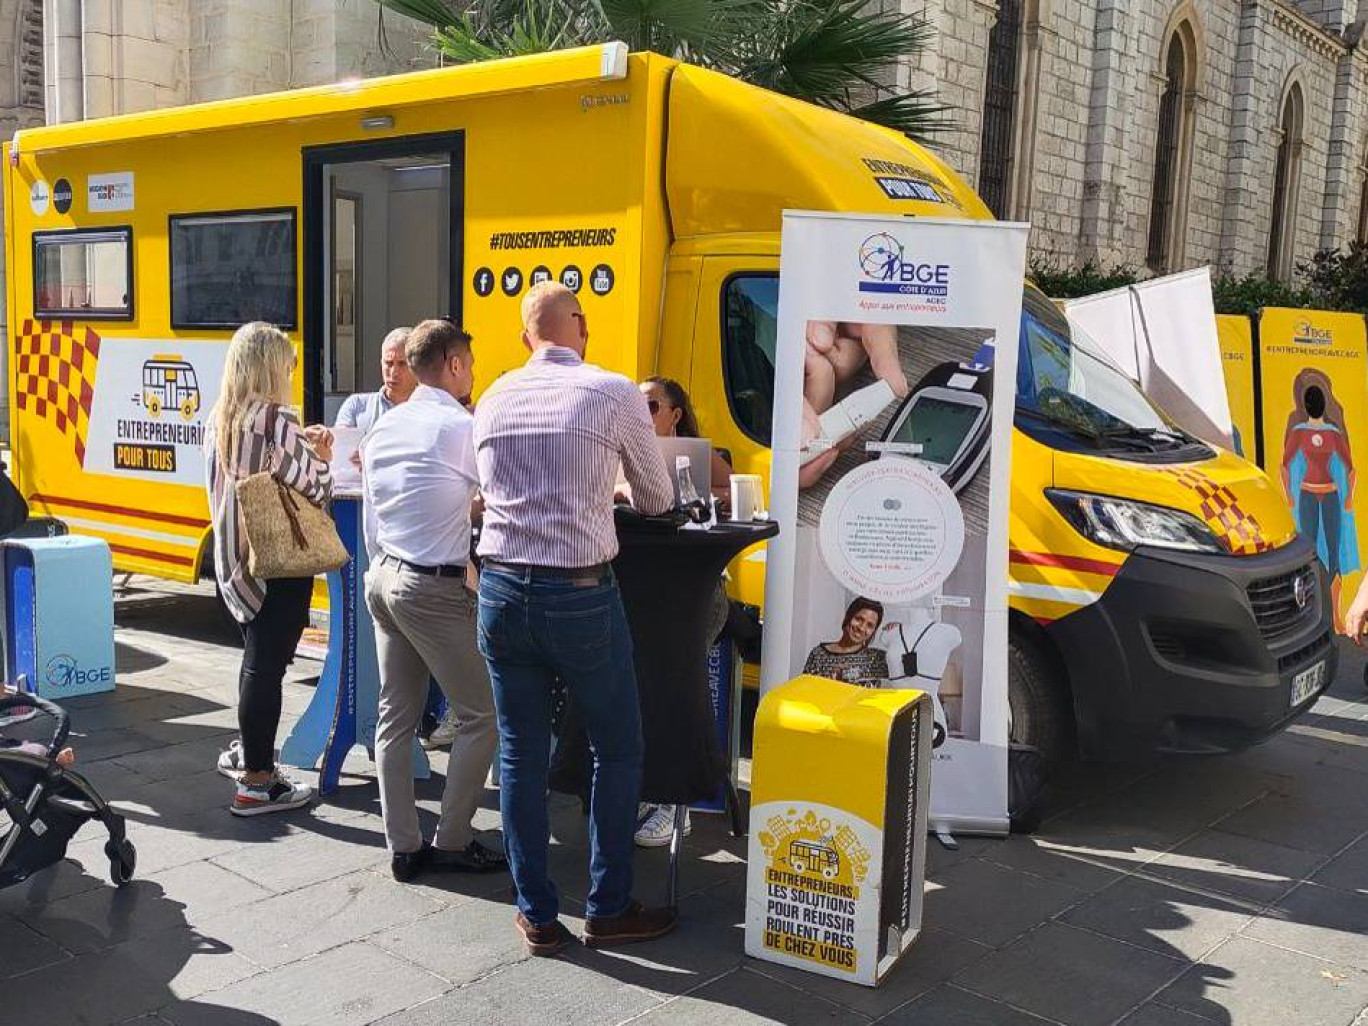  © BGE Côte d’Azur À l’instar d’autres BGE (Booster et garant de l’entrepreneuriat), le BGE Alsace Lorraine fait aujourd’hui partie des opérateurs déployant le dispositif des Bus de l’Entrepreneuriat pour l’année 2024.